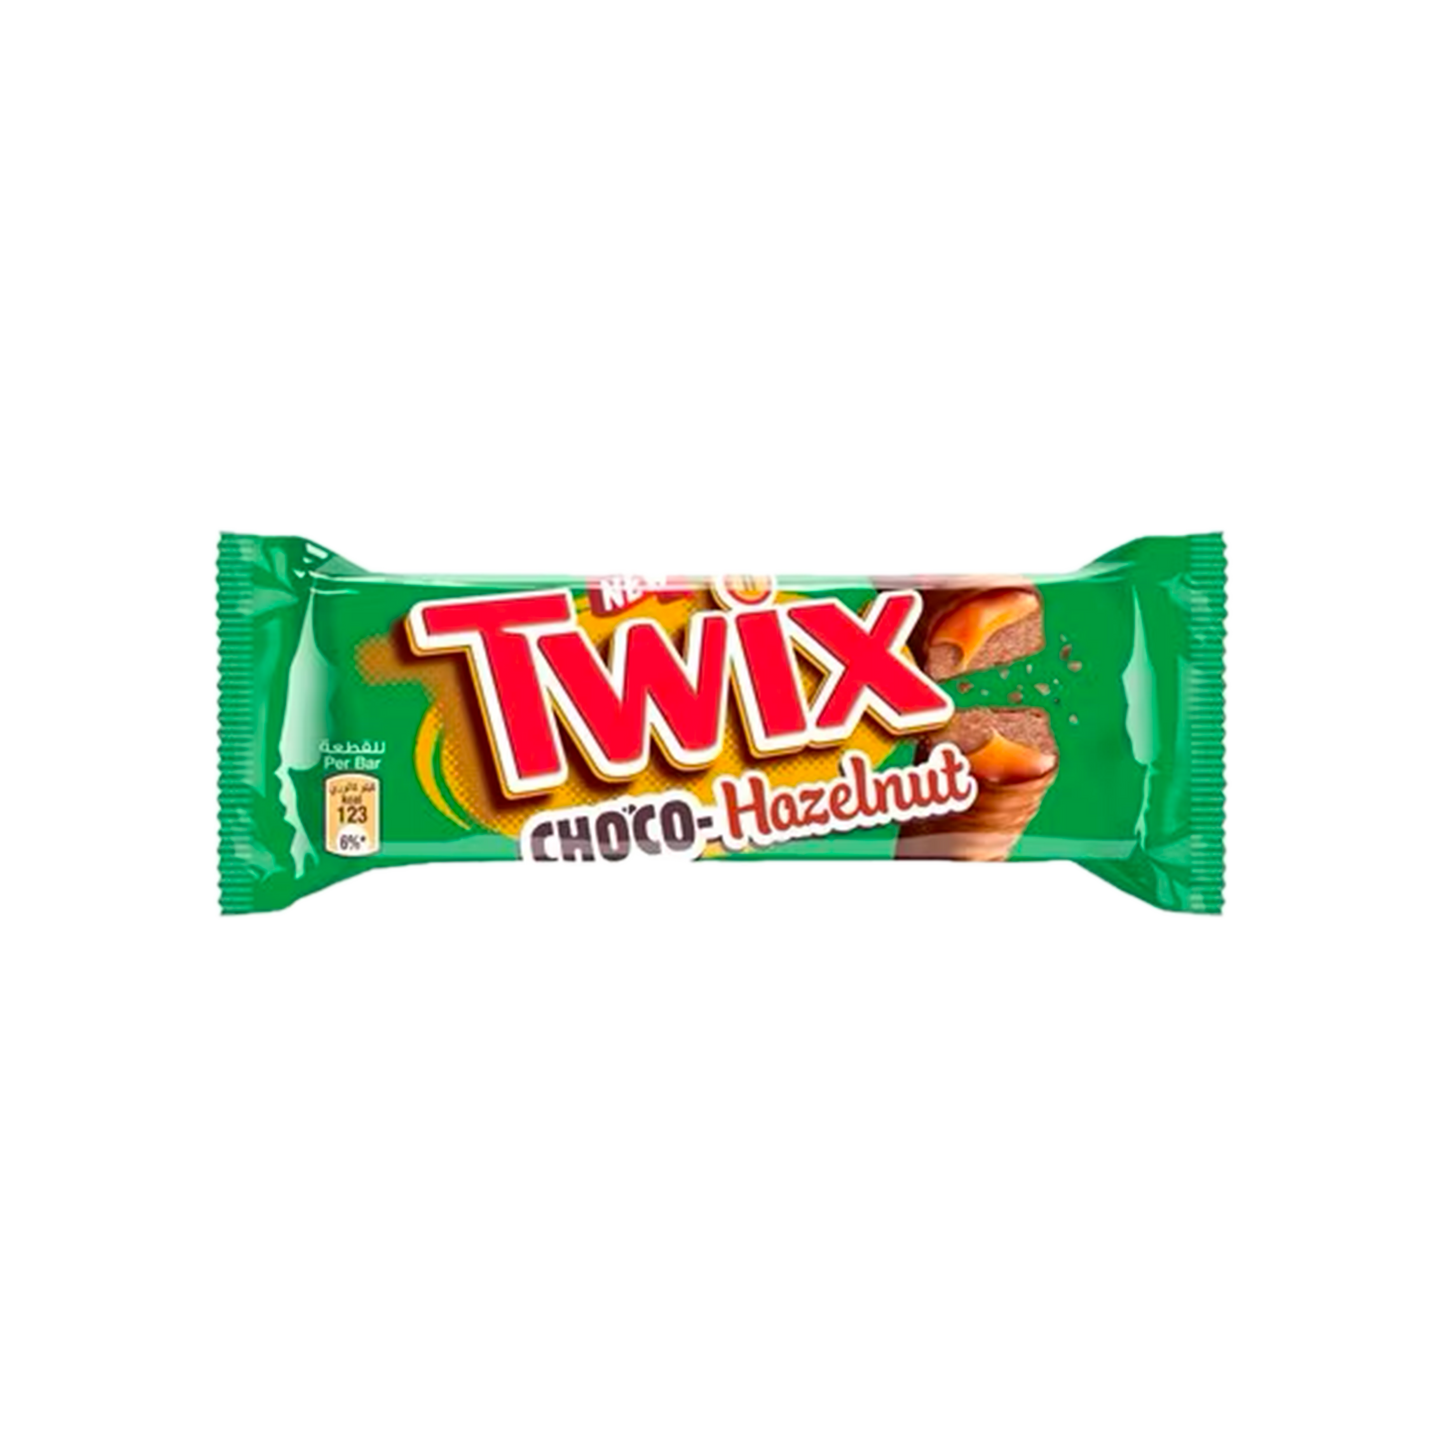 Twix Choco-Hazelnut 50g